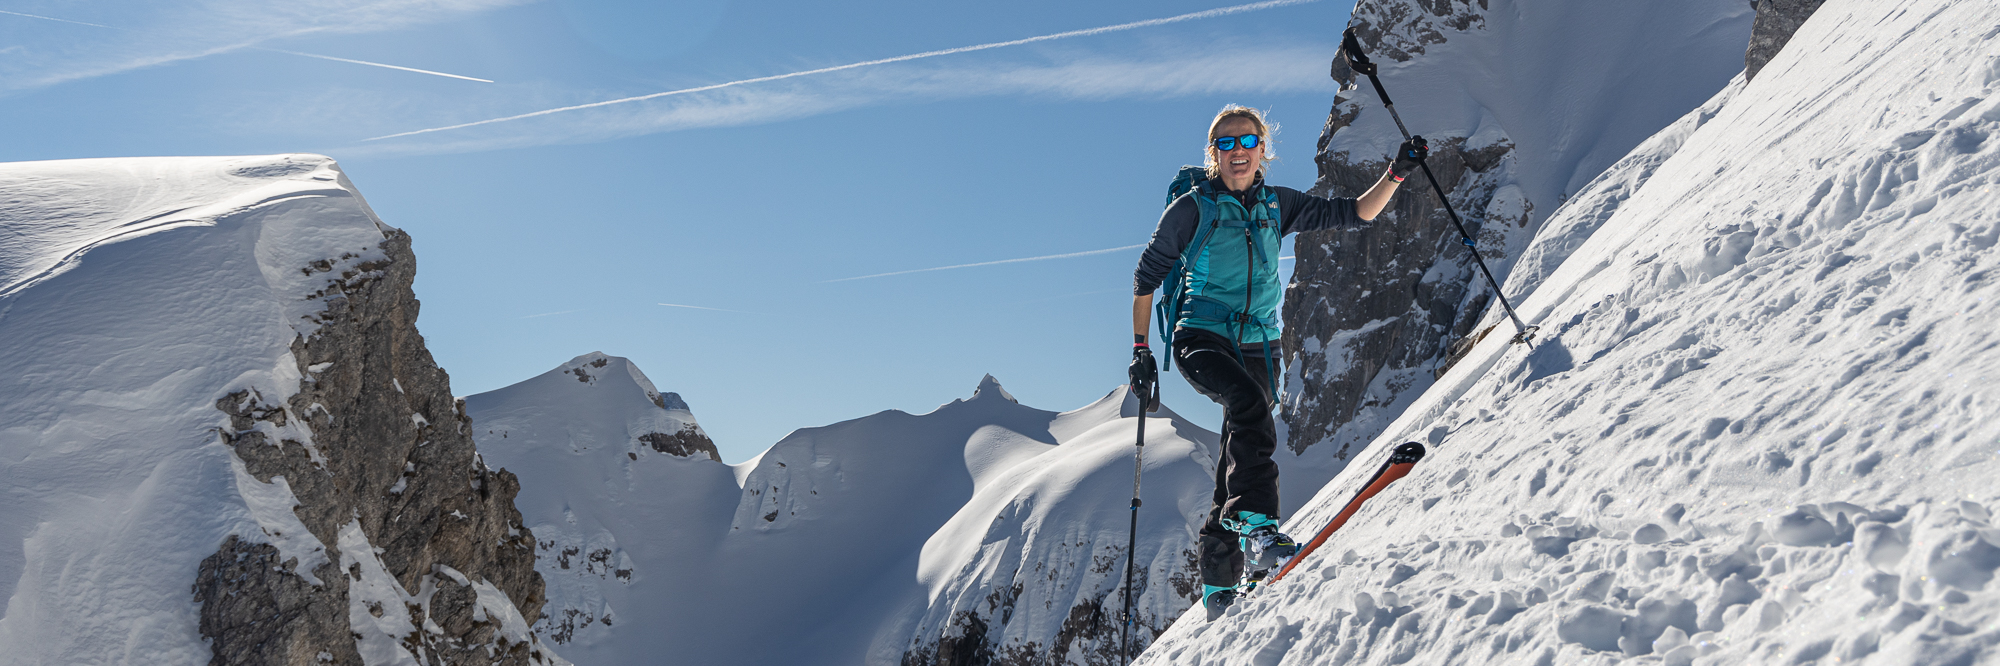 Skitour auf die Hochalm, Berchtesgadener Alpen